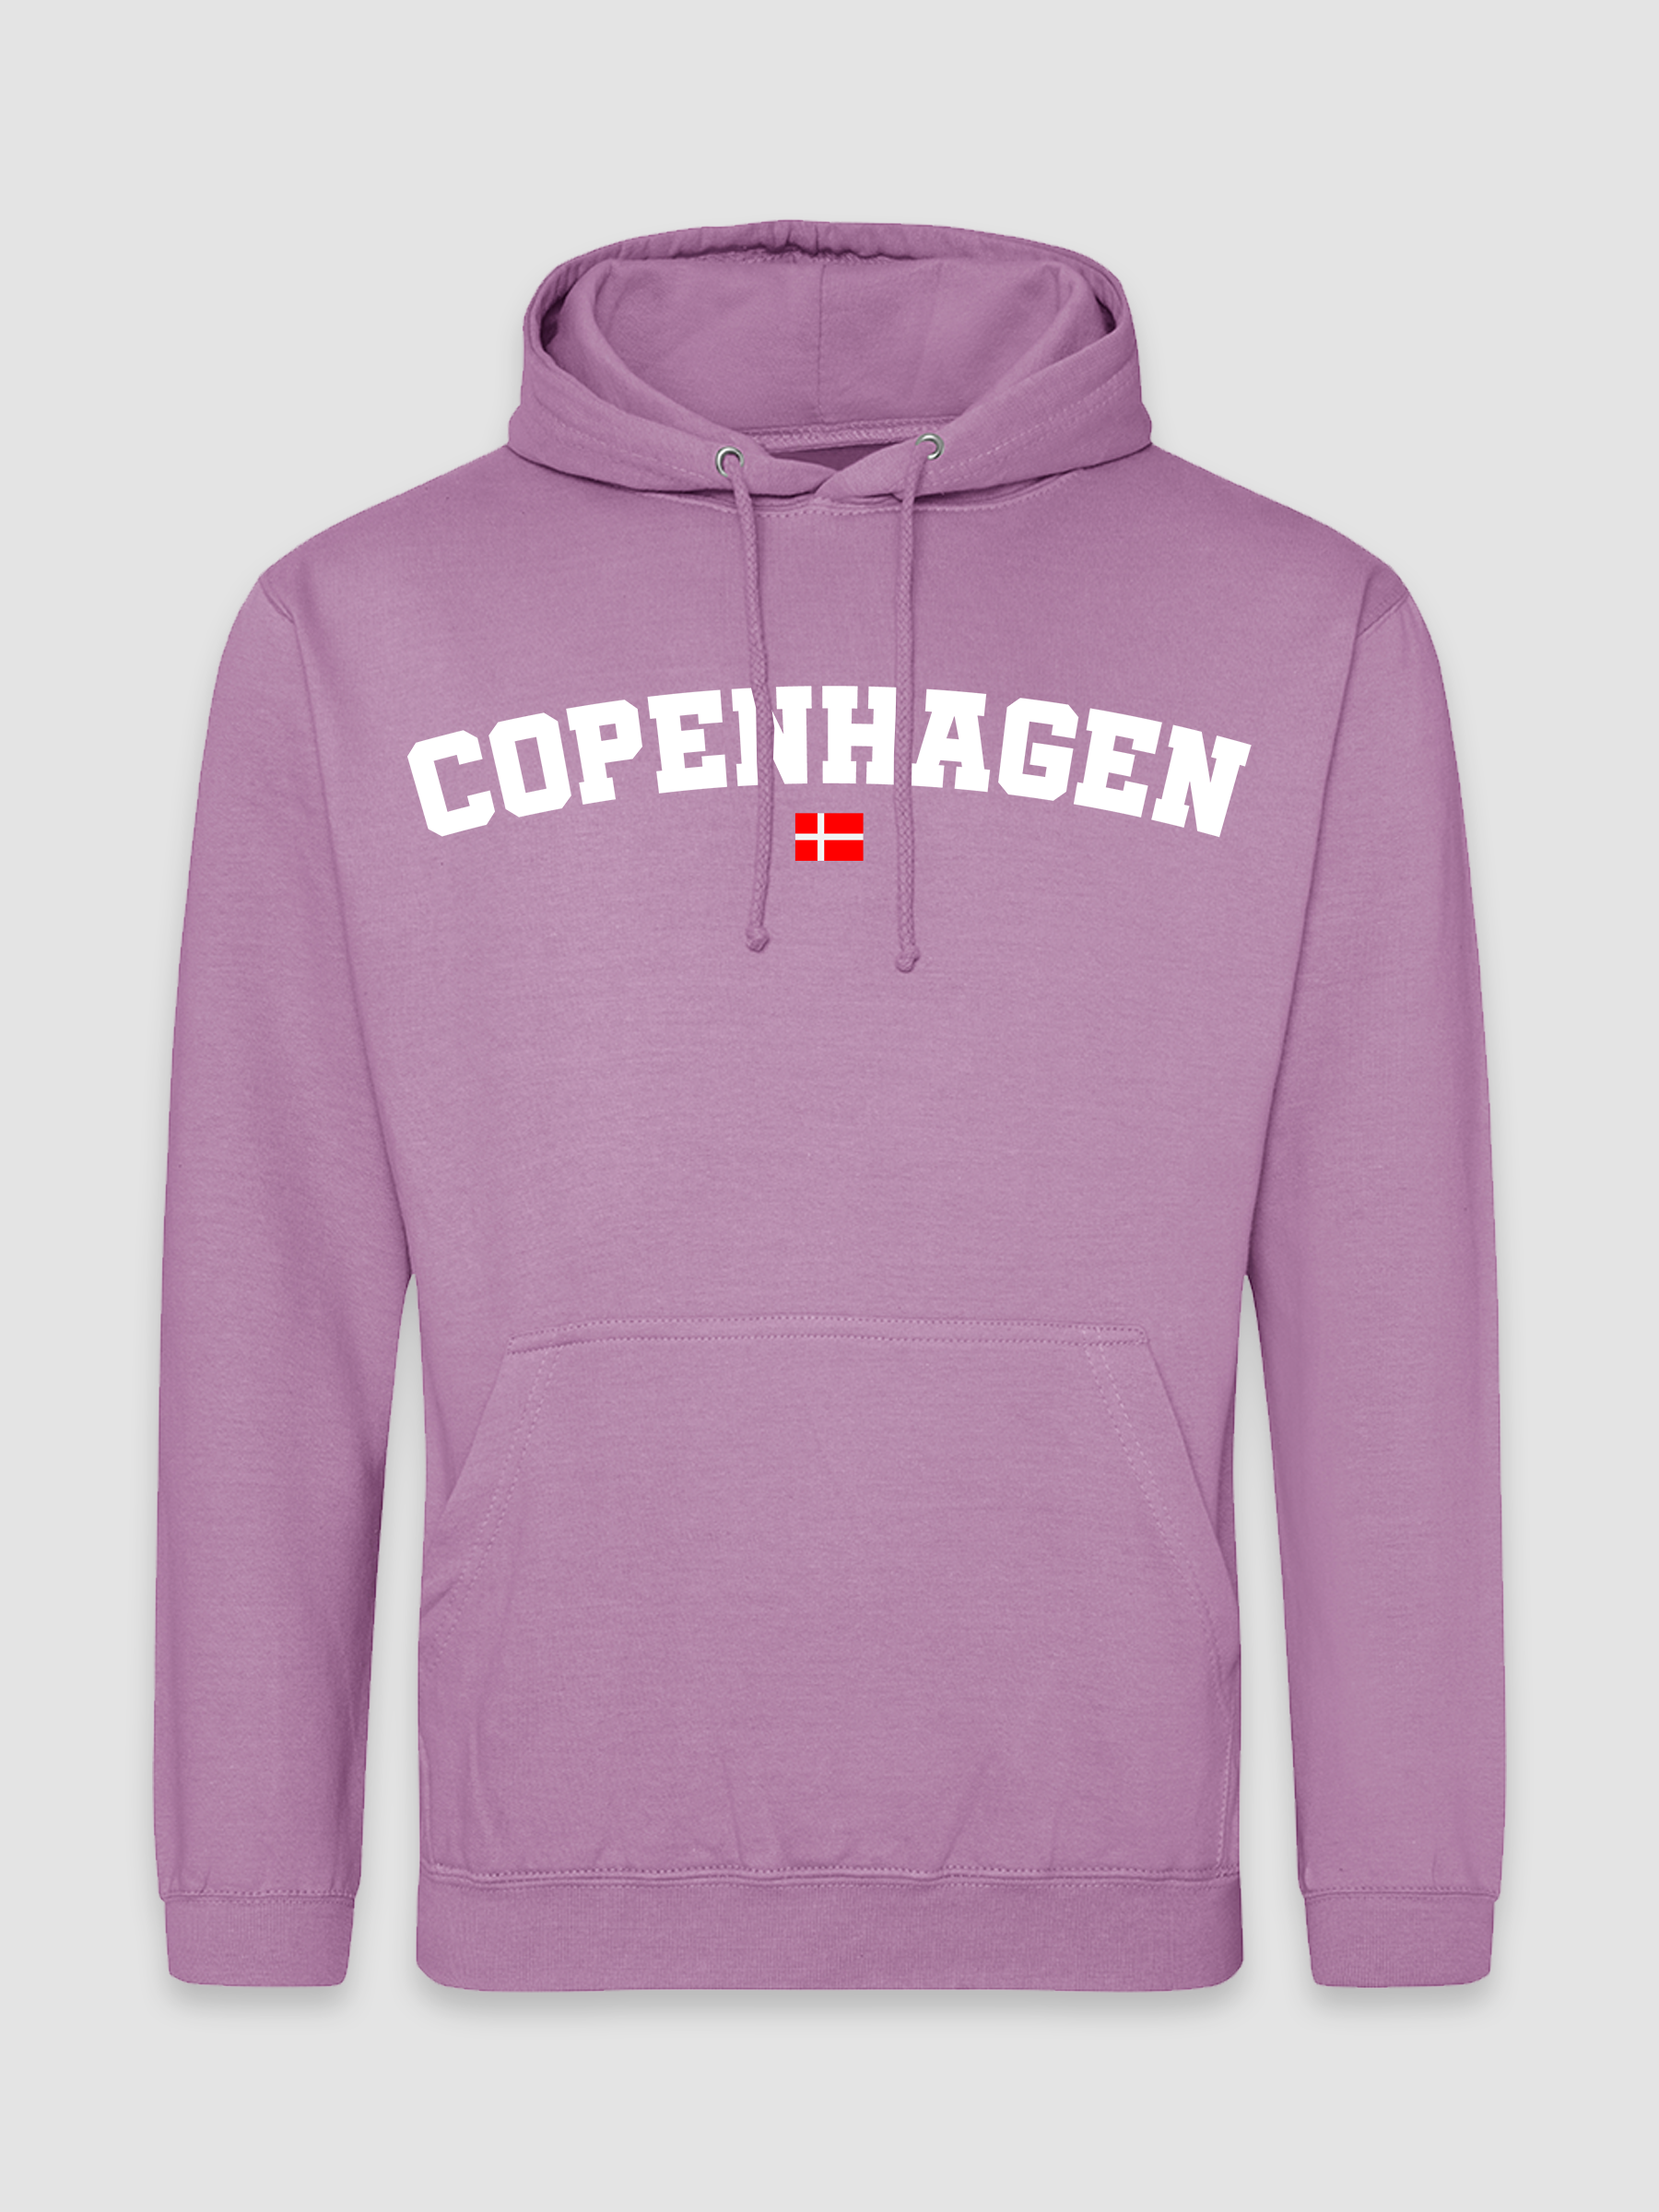 Copenhagen - Himmelblå Hoodie